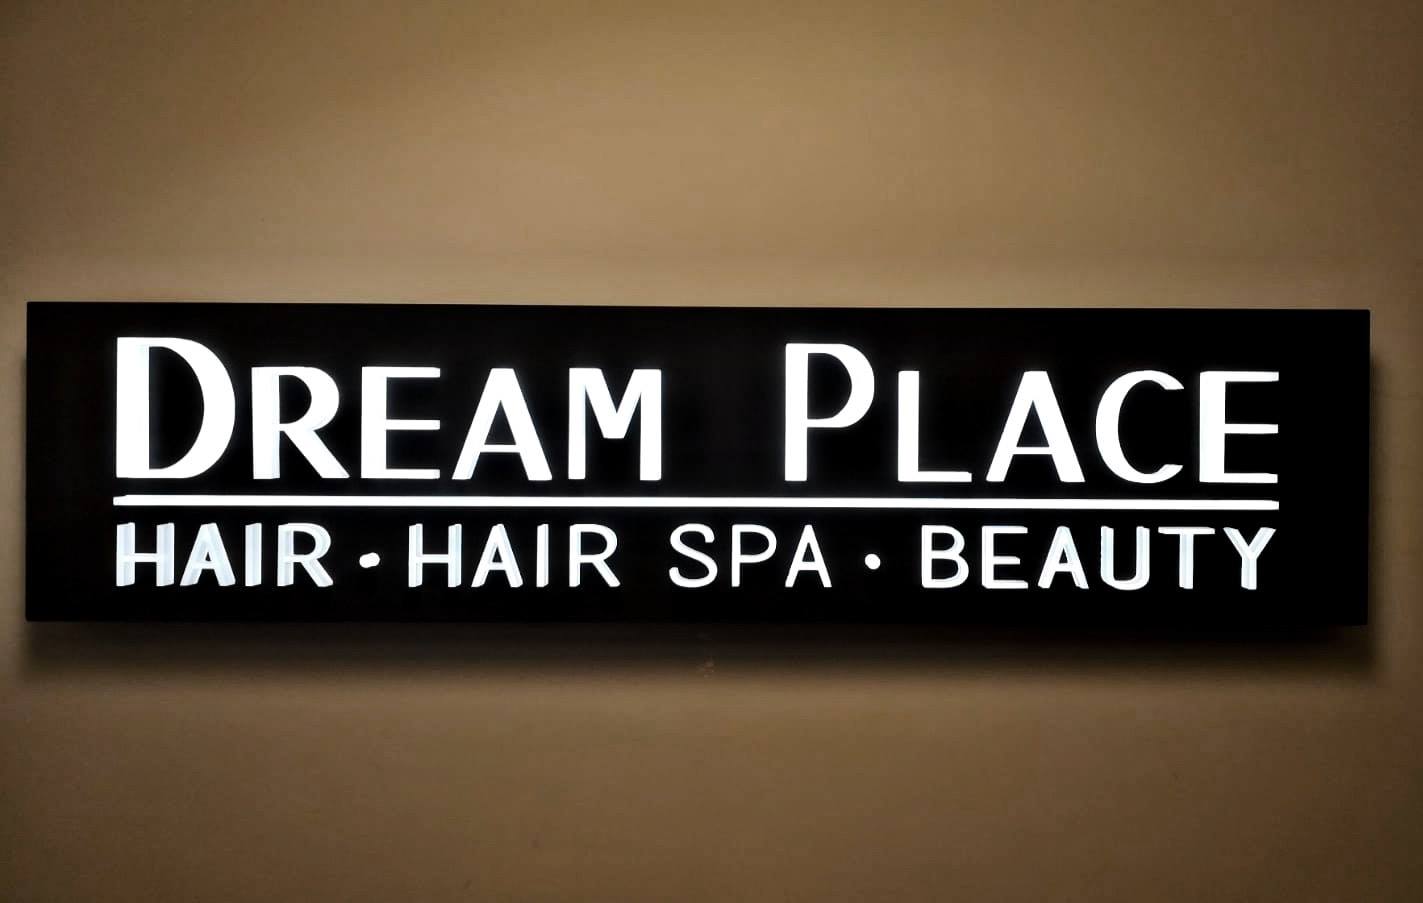 香港美髮網 HK Hair Salon 髮型屋Salon / 髮型師: Dream Place Hair & Beauty